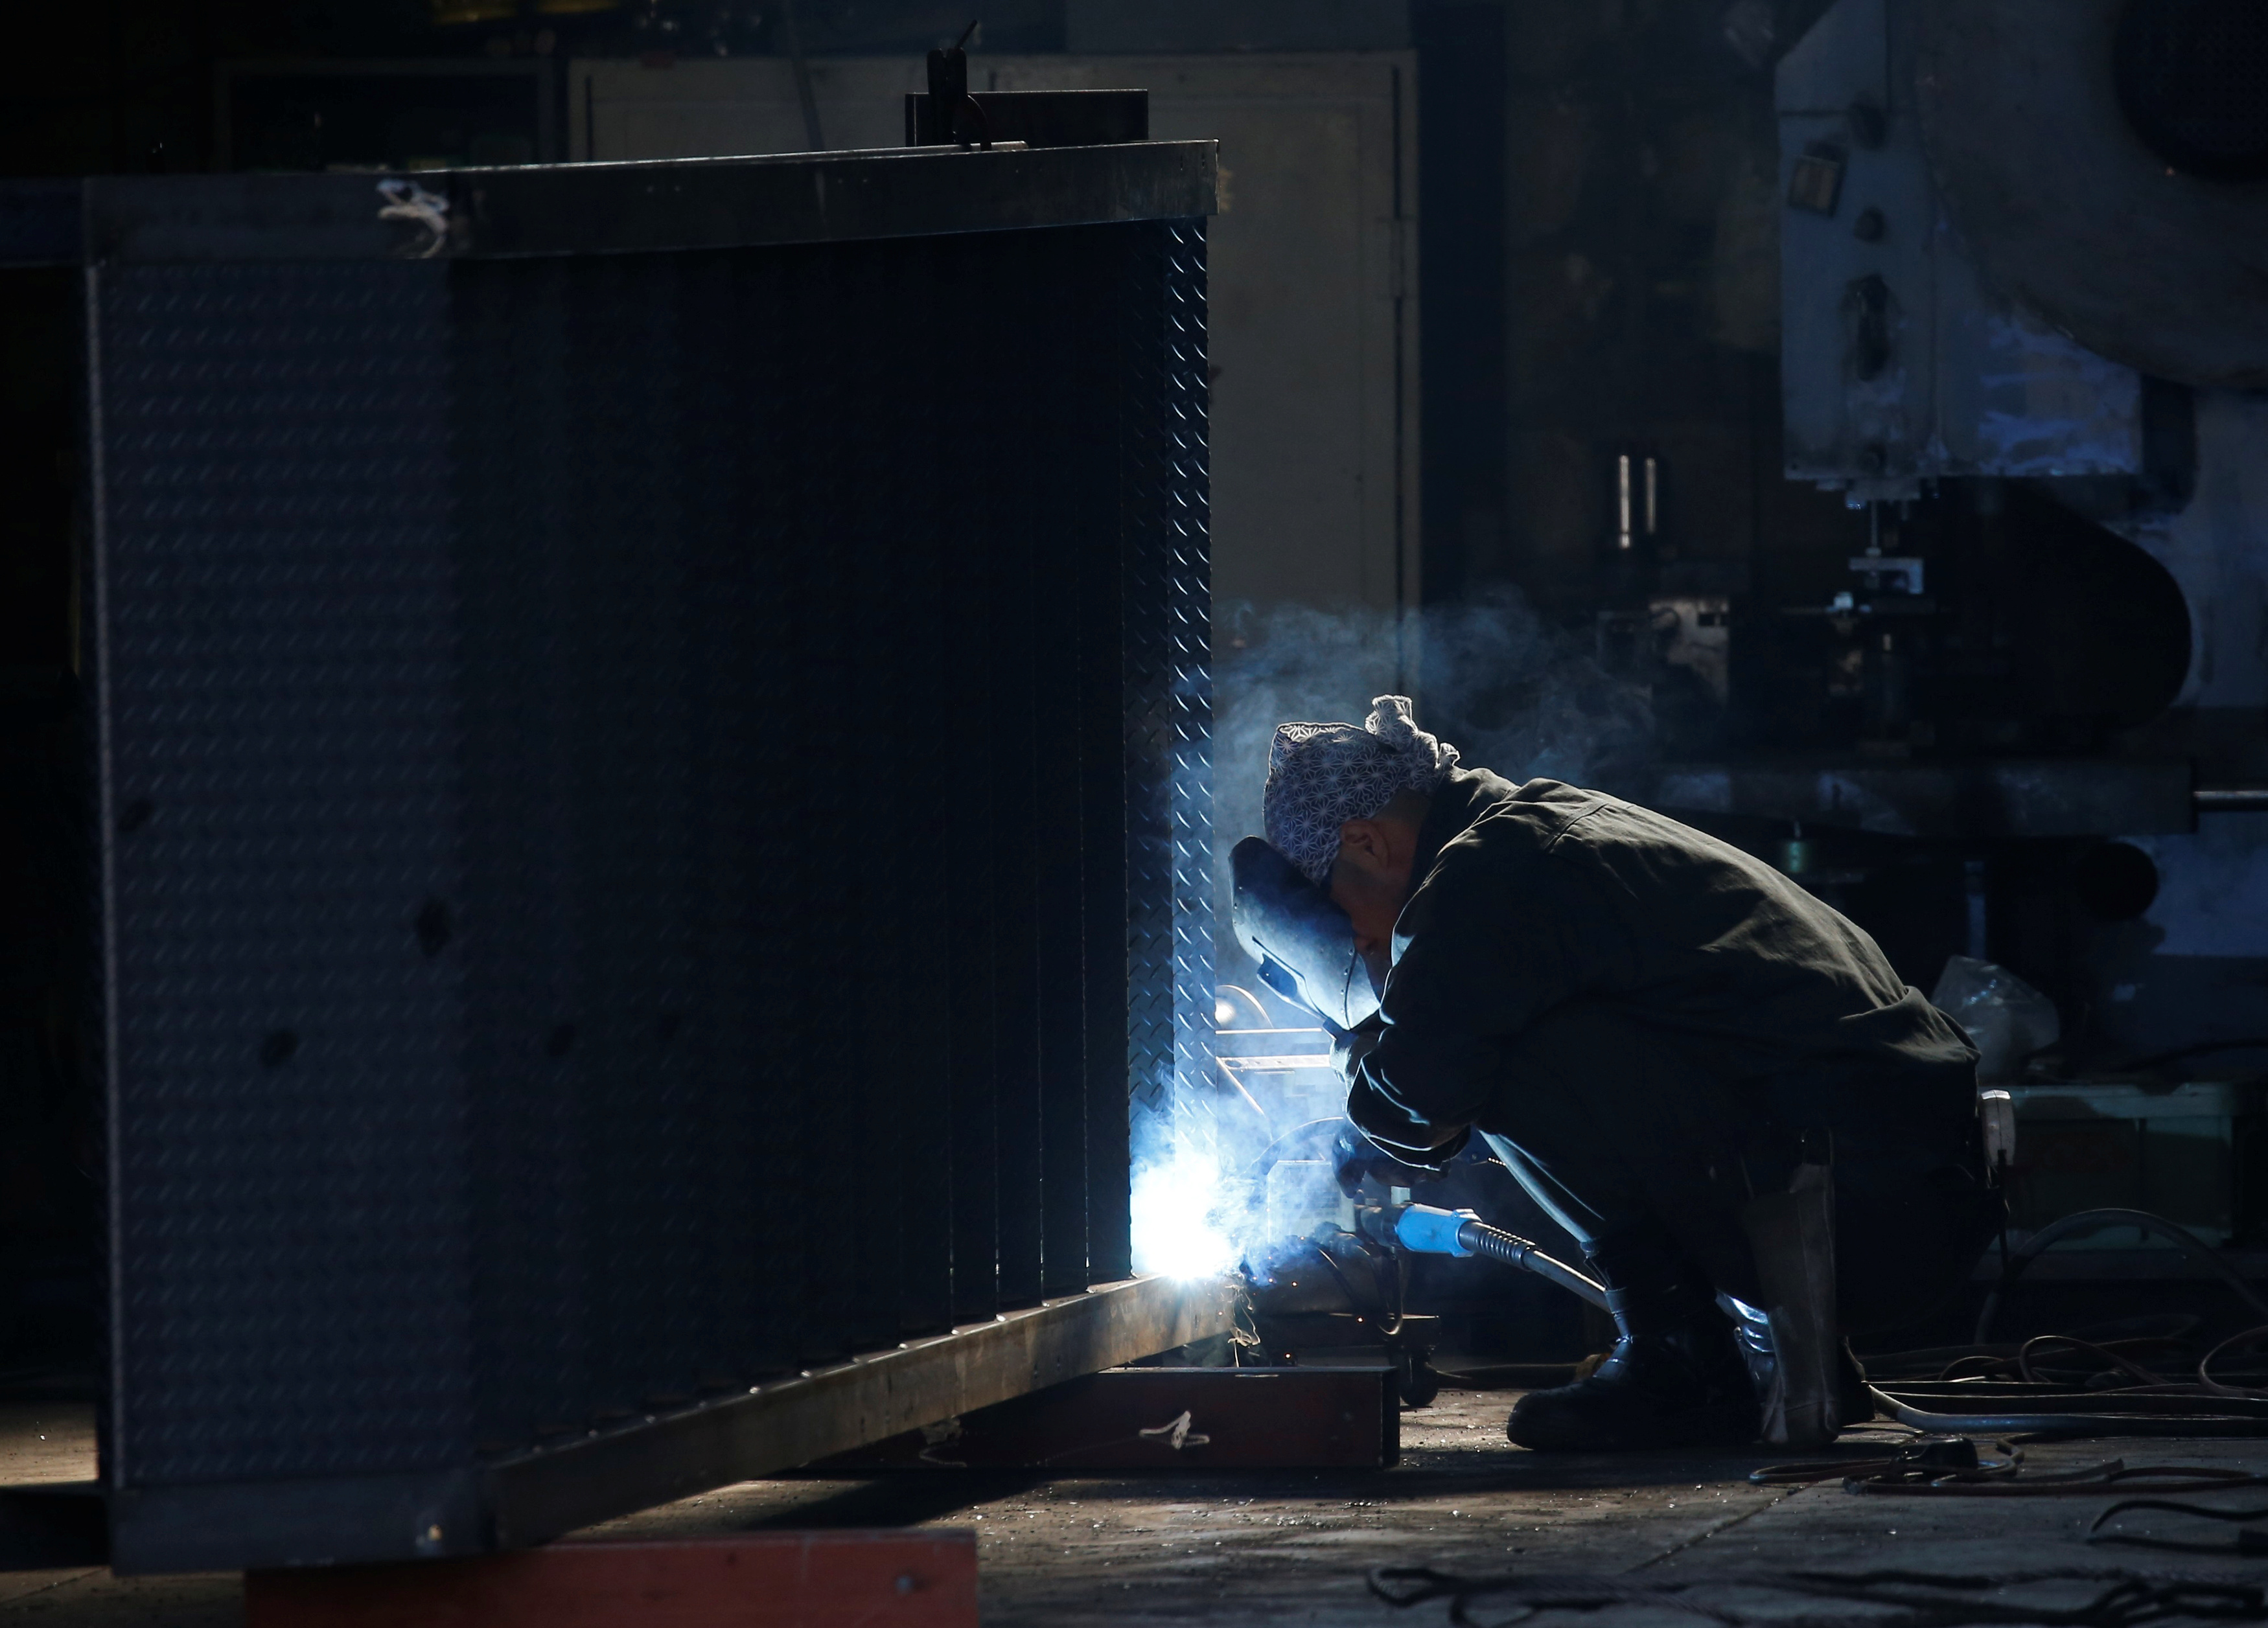 A man works at a factory at the Keihin industrial zone in Kawasaki